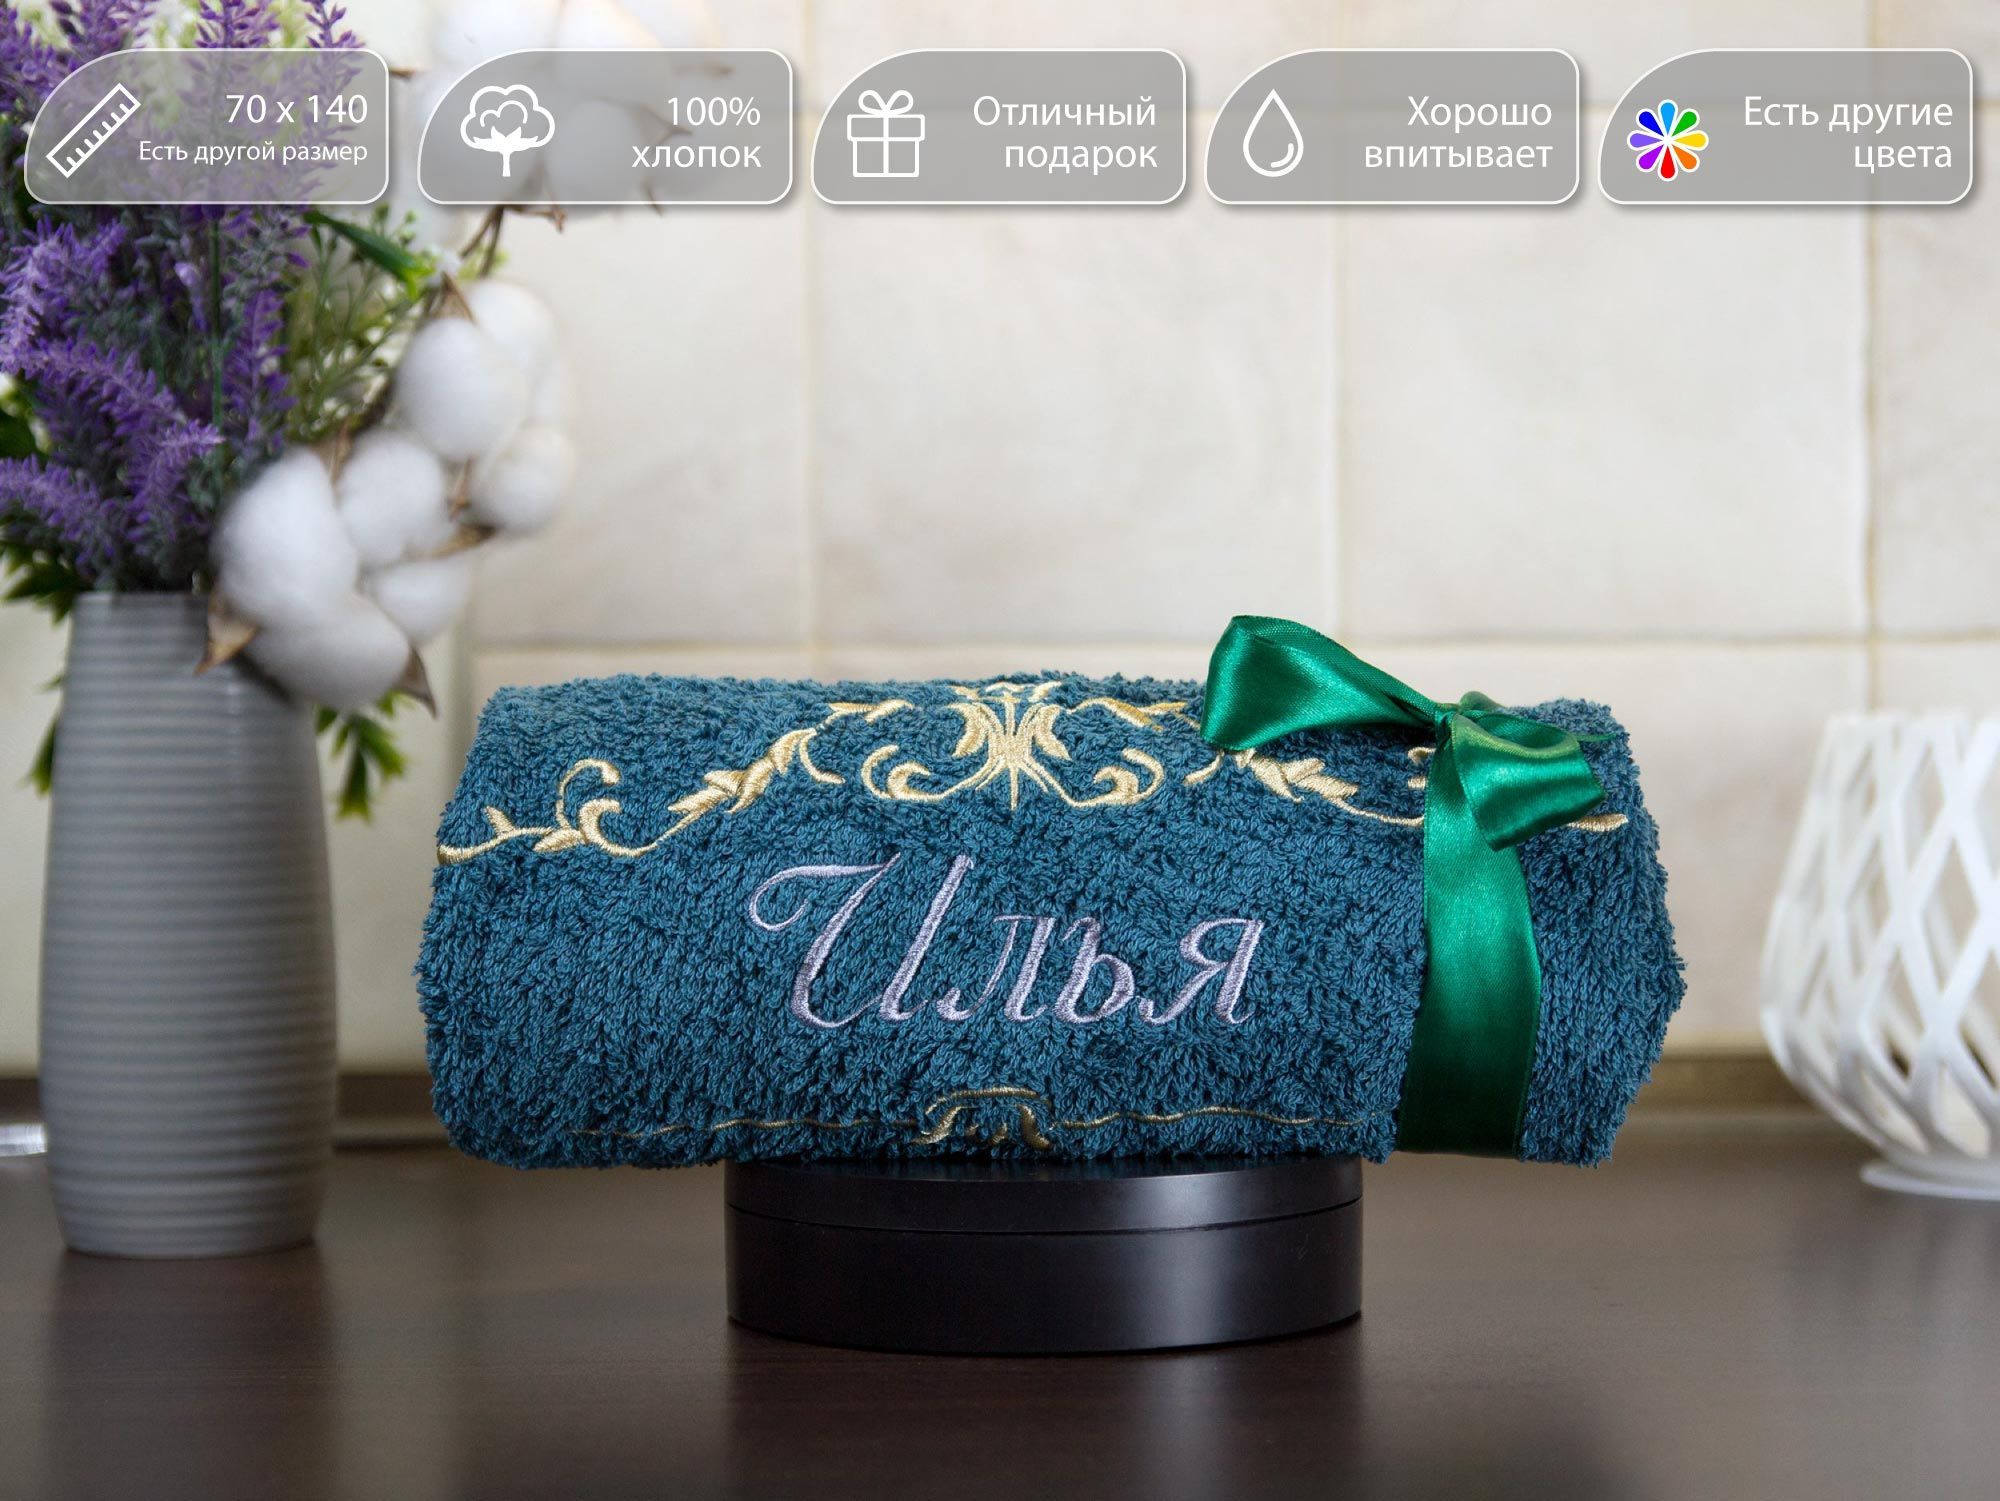 Полотенце махровое, банное, подарочное, с вышивкой имени Илья и узором, 70x140 см, 100 % хлопок